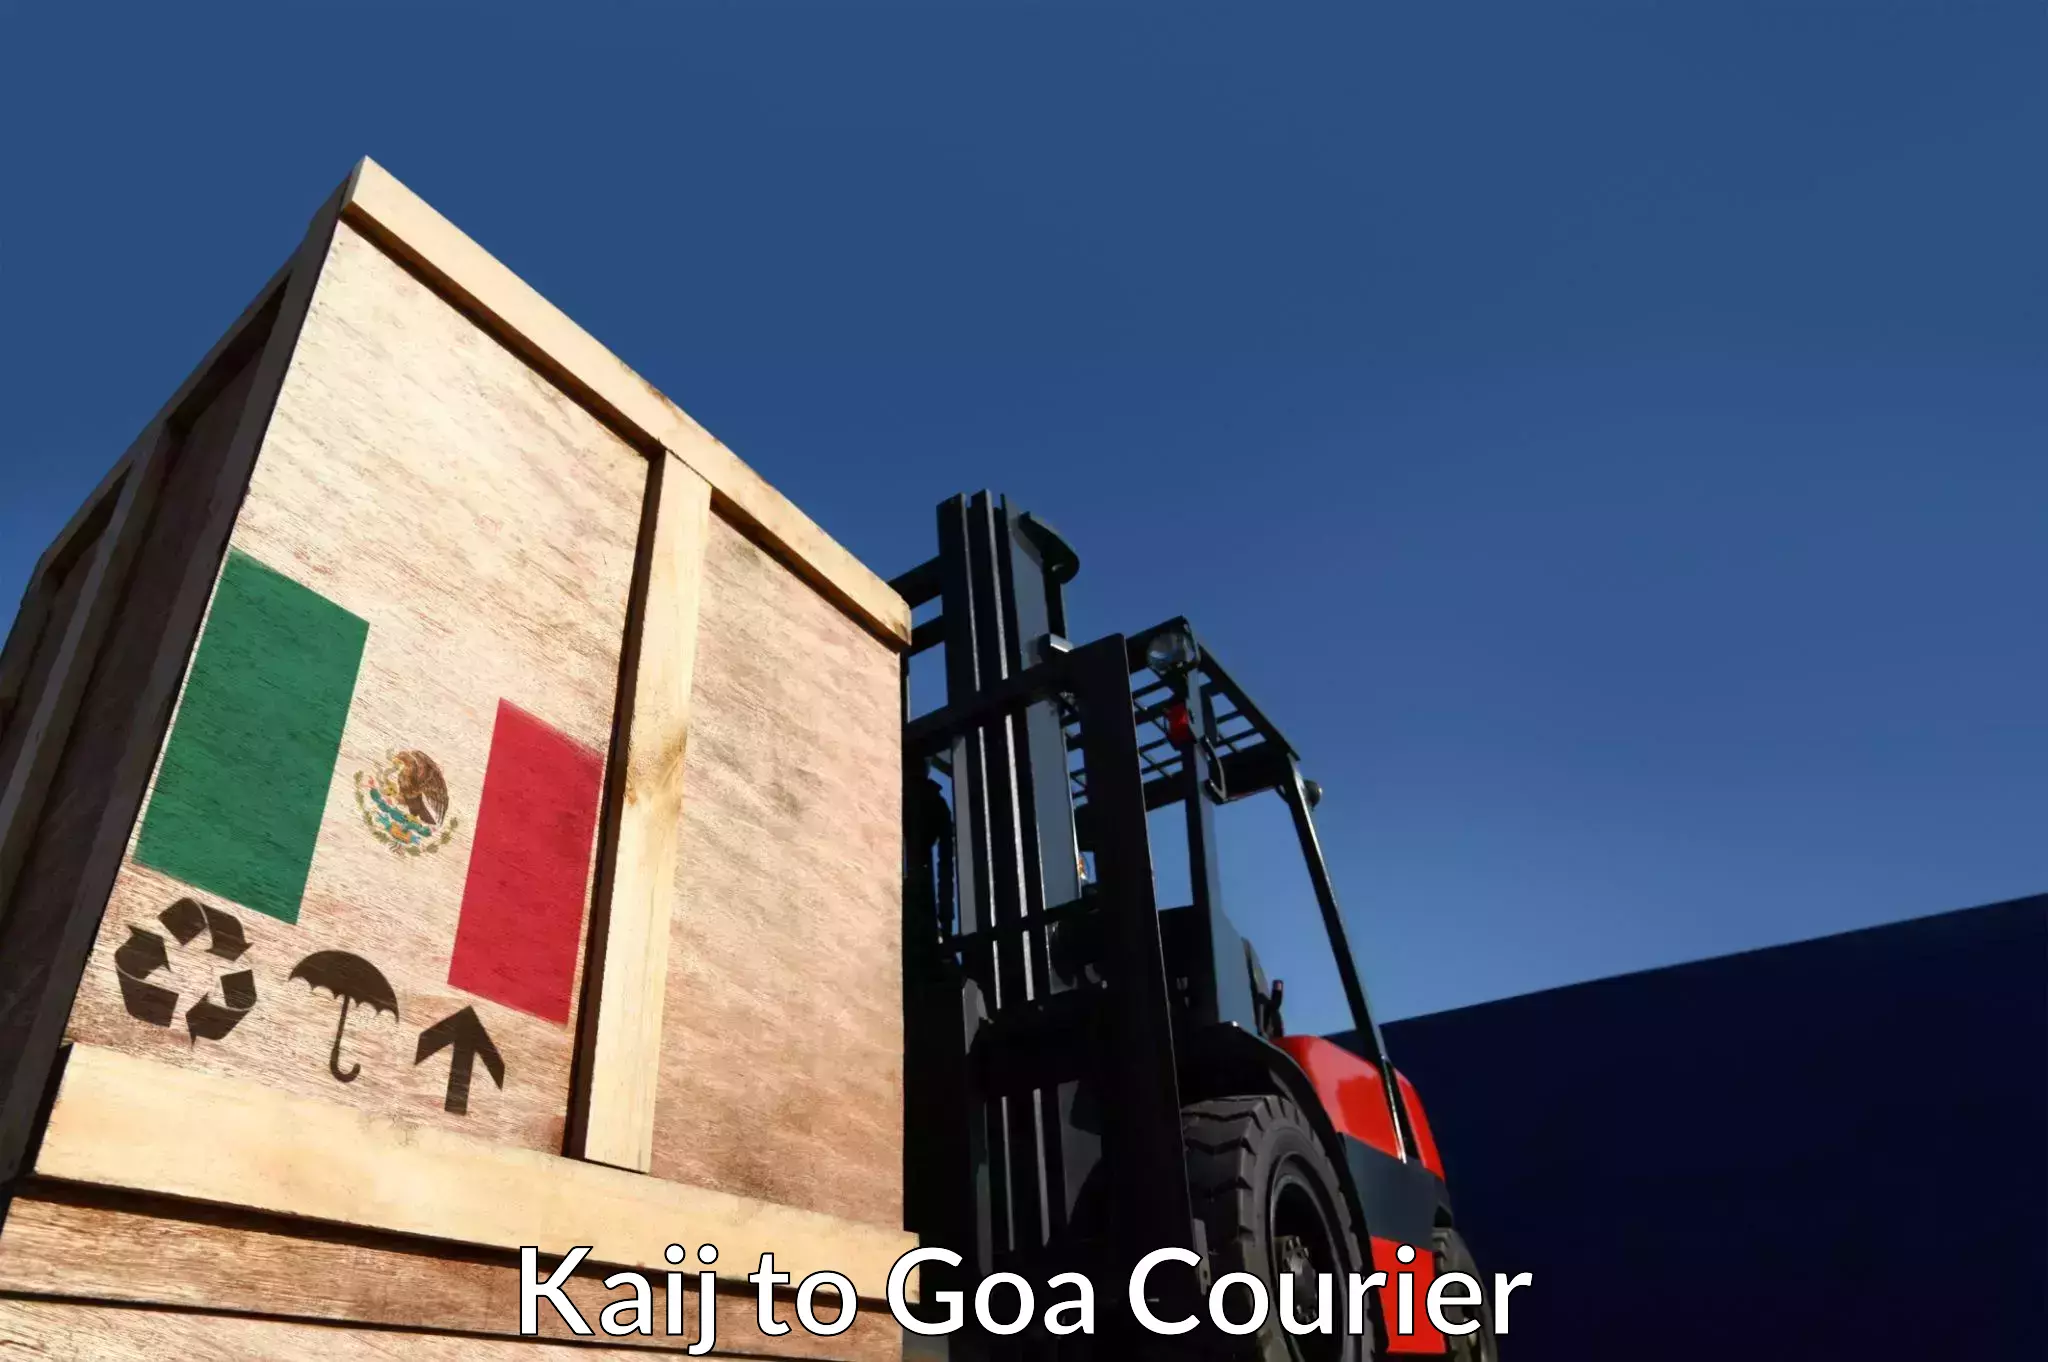 Global freight services Kaij to Goa University